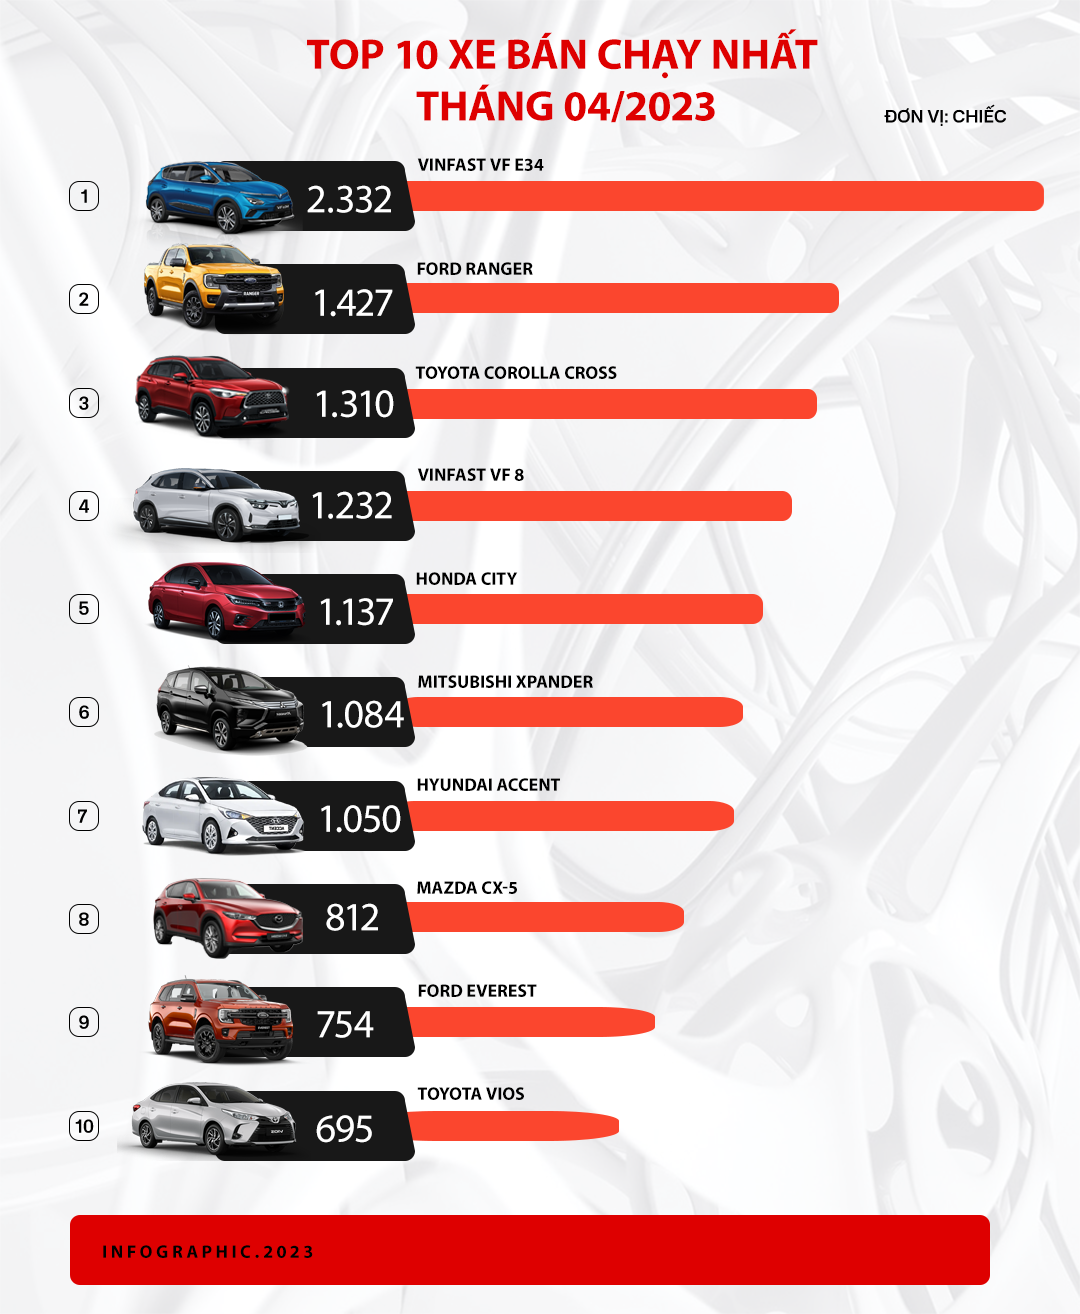 Thị trường tụt dốc, VinFast VF e34 lần đầu lên đỉnh bảng xếp hạng, VF 8 cũng có mặt trong top 10 xe bán chạy - Ảnh 2.